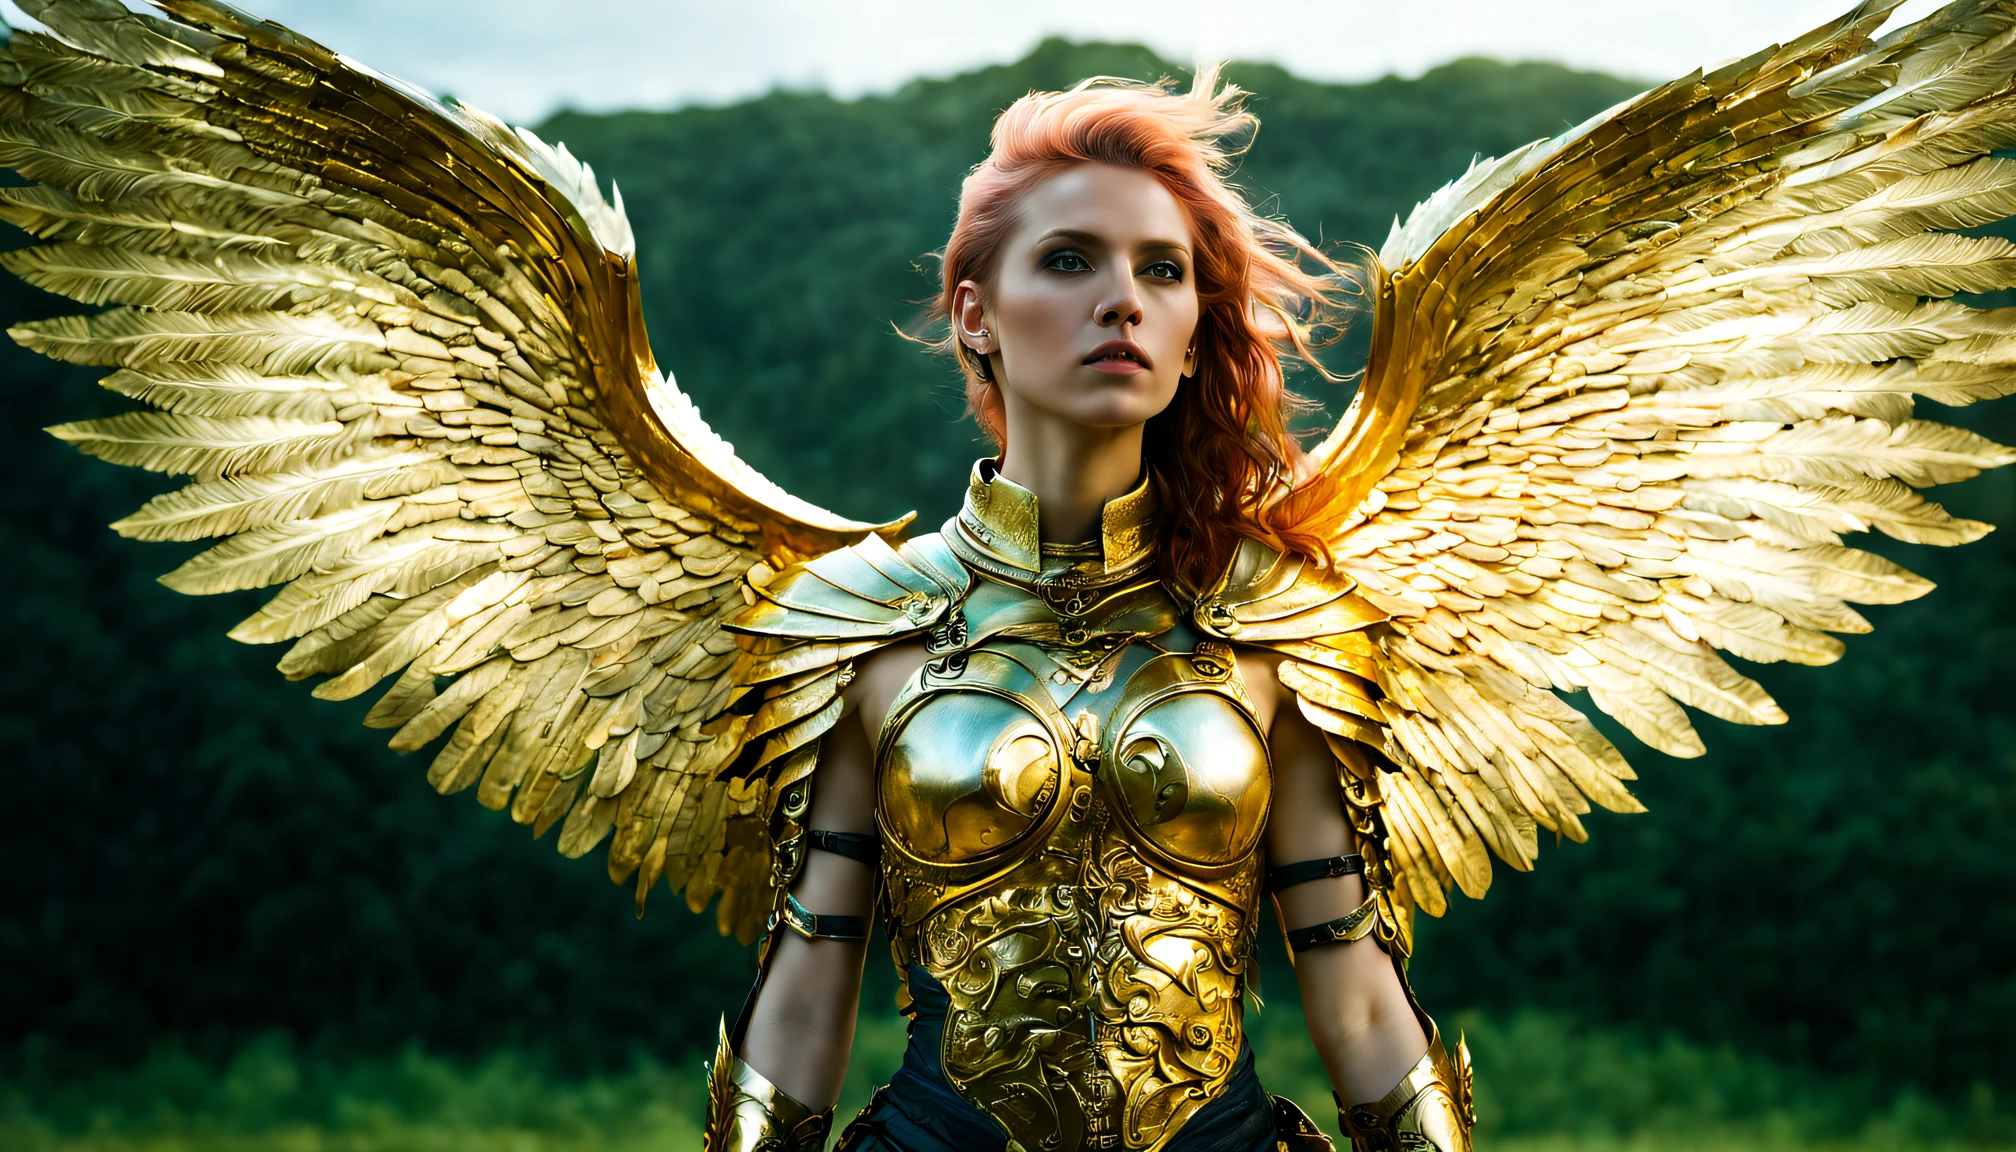 (มุมกว้าง),(สไตล์เอเธอร์พังก์:1.4),8ก , คุณภาพพิเศษ ,ธรรมชาติ, ภาพนอกรีต, intricate รายละเอียด, วาลคิรีที่สวยงาม ,gold รายละเอียด holy gorgeous armor, intricate รายละเอียด wide angelic wings on her back,กางปีกนางฟ้าให้กว้าง,ยูโทเปีย,มายากล,รายละเอียด,ผู้วิเศษ,กลางแจ้ง,ทิวทัศน์ที่น่าทึ่ง,(highly รายละเอียด:1.2),(ความสมจริงเป็นพิเศษ:1.2), เหมือนจริง, รายละเอียด, มีพื้นผิว, ผิว, ผมสีขาวแพลตตินั่ม, ตาสีเขียว, โดย Alex Huguet, ไมค์ ฮิล, เอียน สปริกส์, ปาร์ค แจชอล, มาเร็ค เดนโก ,รายละเอียดมาสเตอร์2,รายละเอียดเพิ่มเติม XL,(ภาพครึ่งตัว)